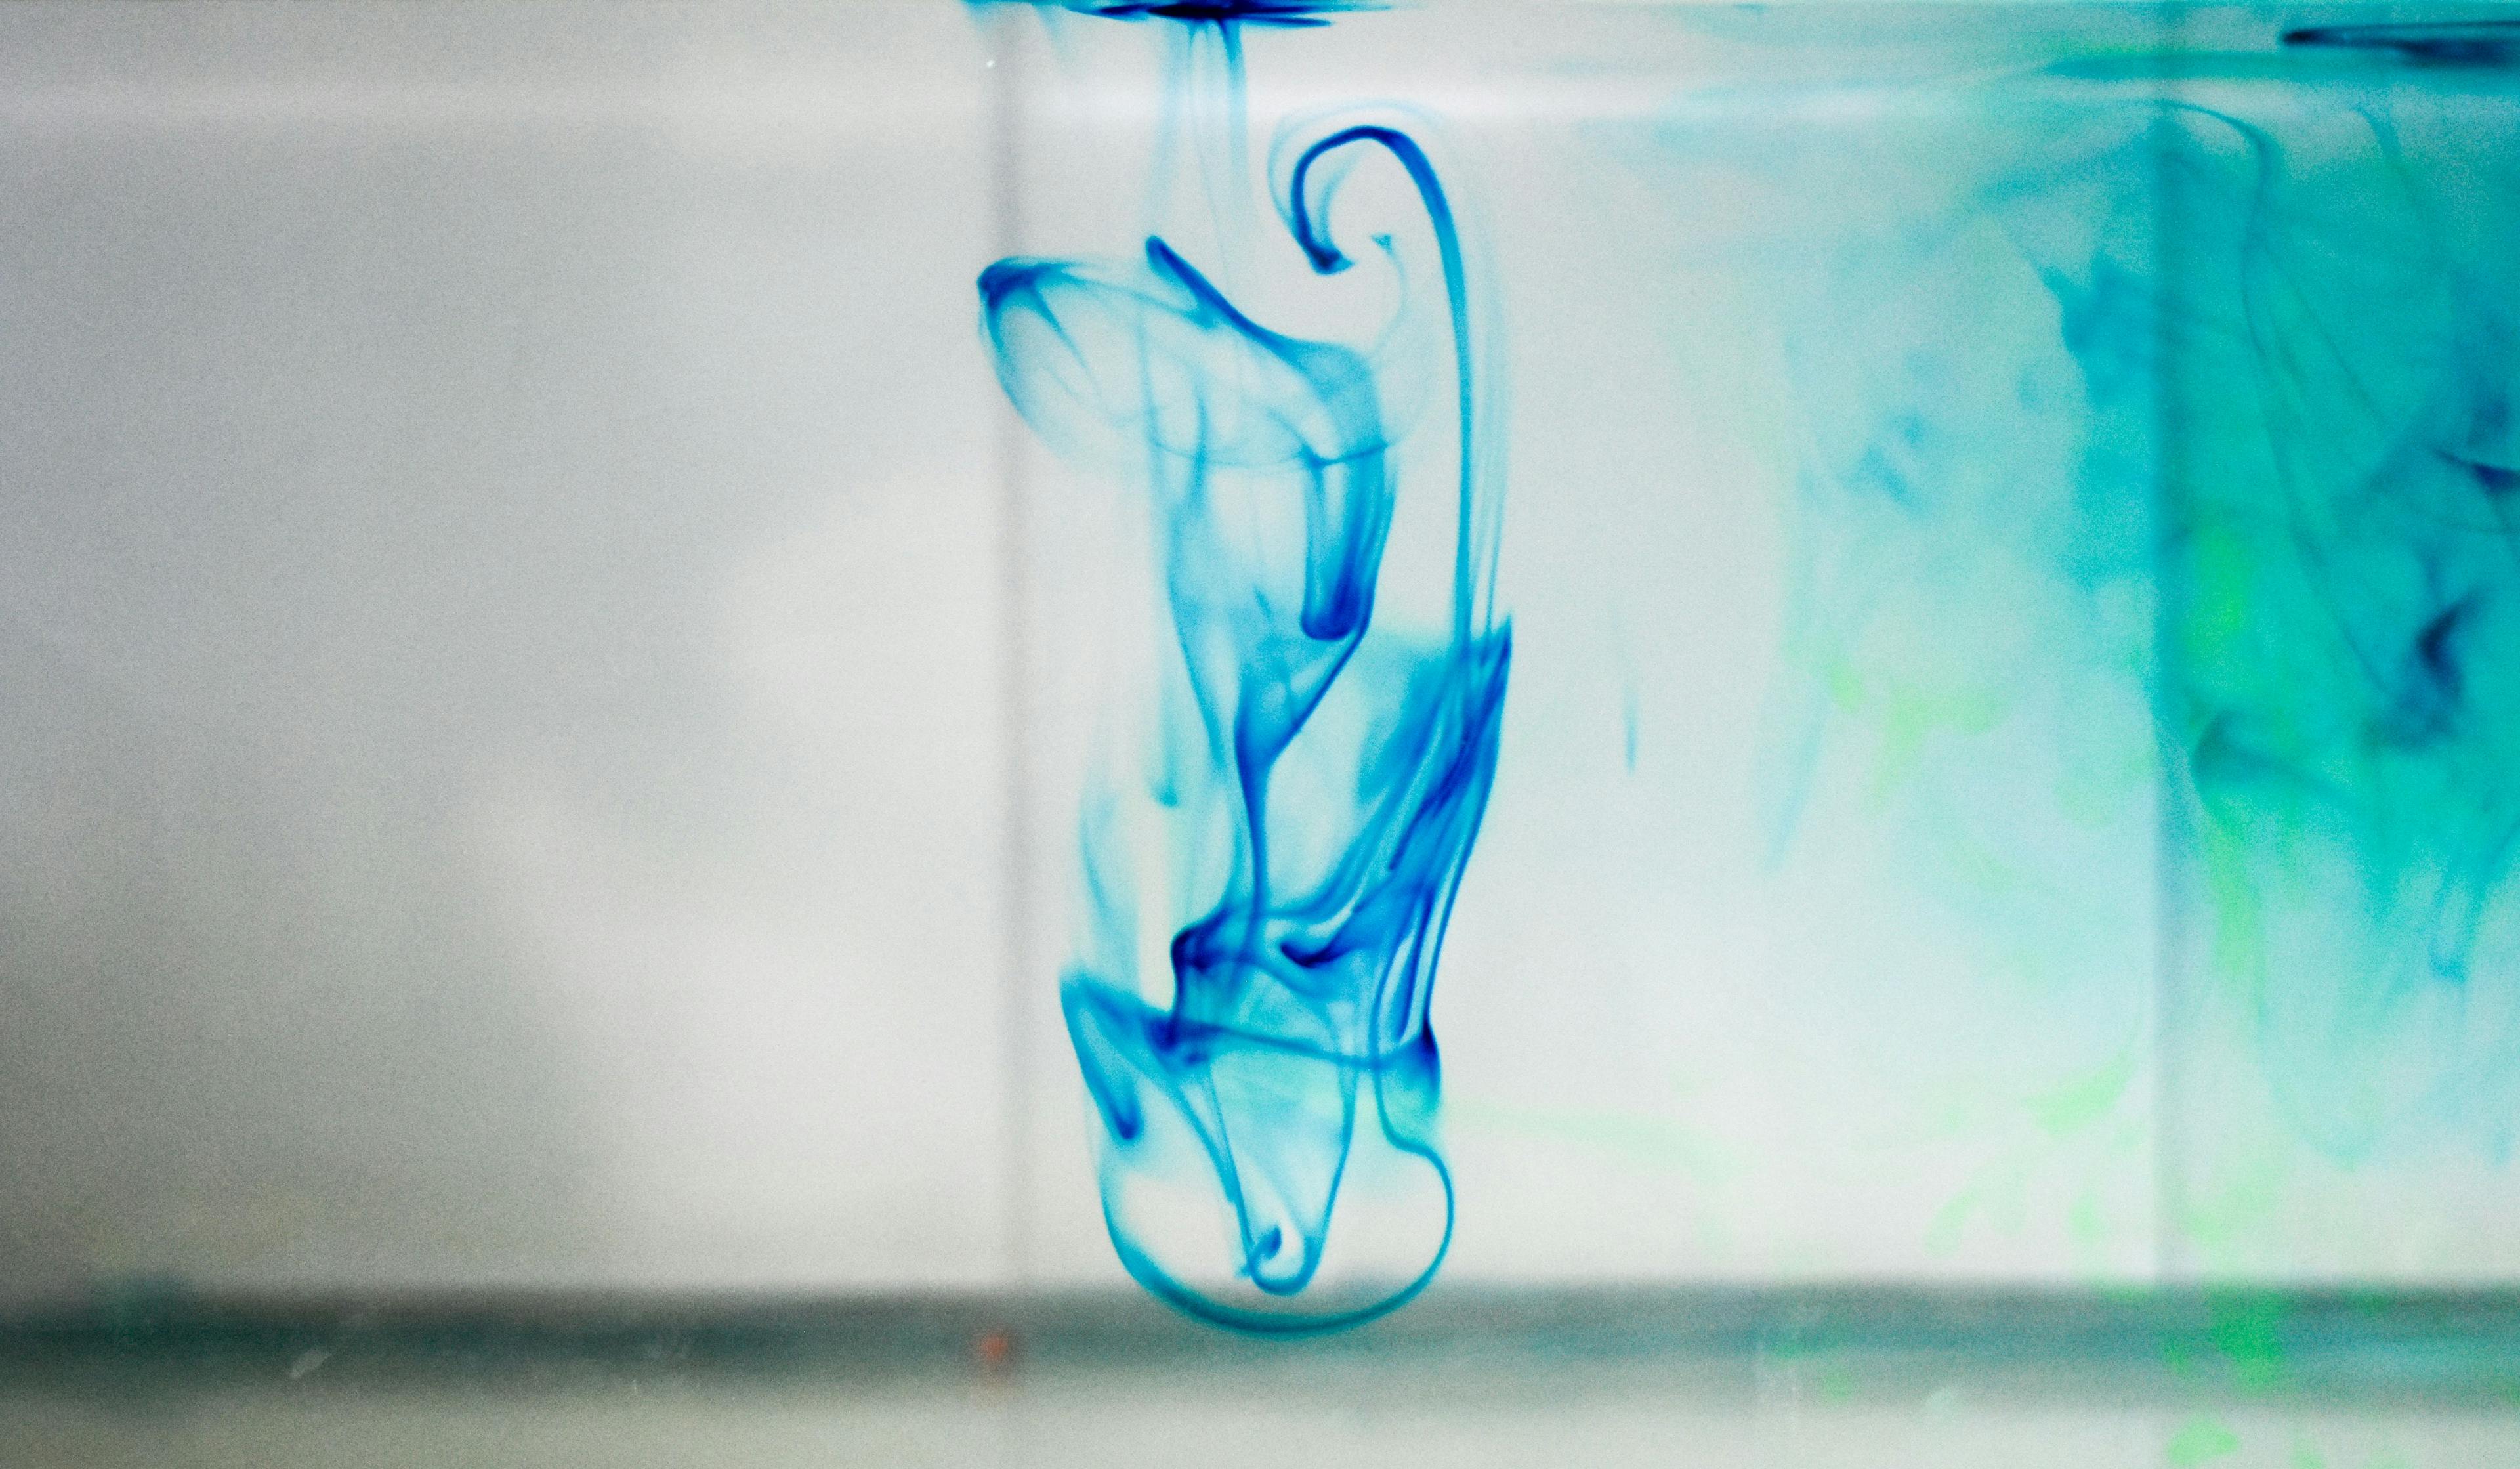 Methylene blue chemical reaction in water | Image Credit: © Sudhakar - stock.adobe.com